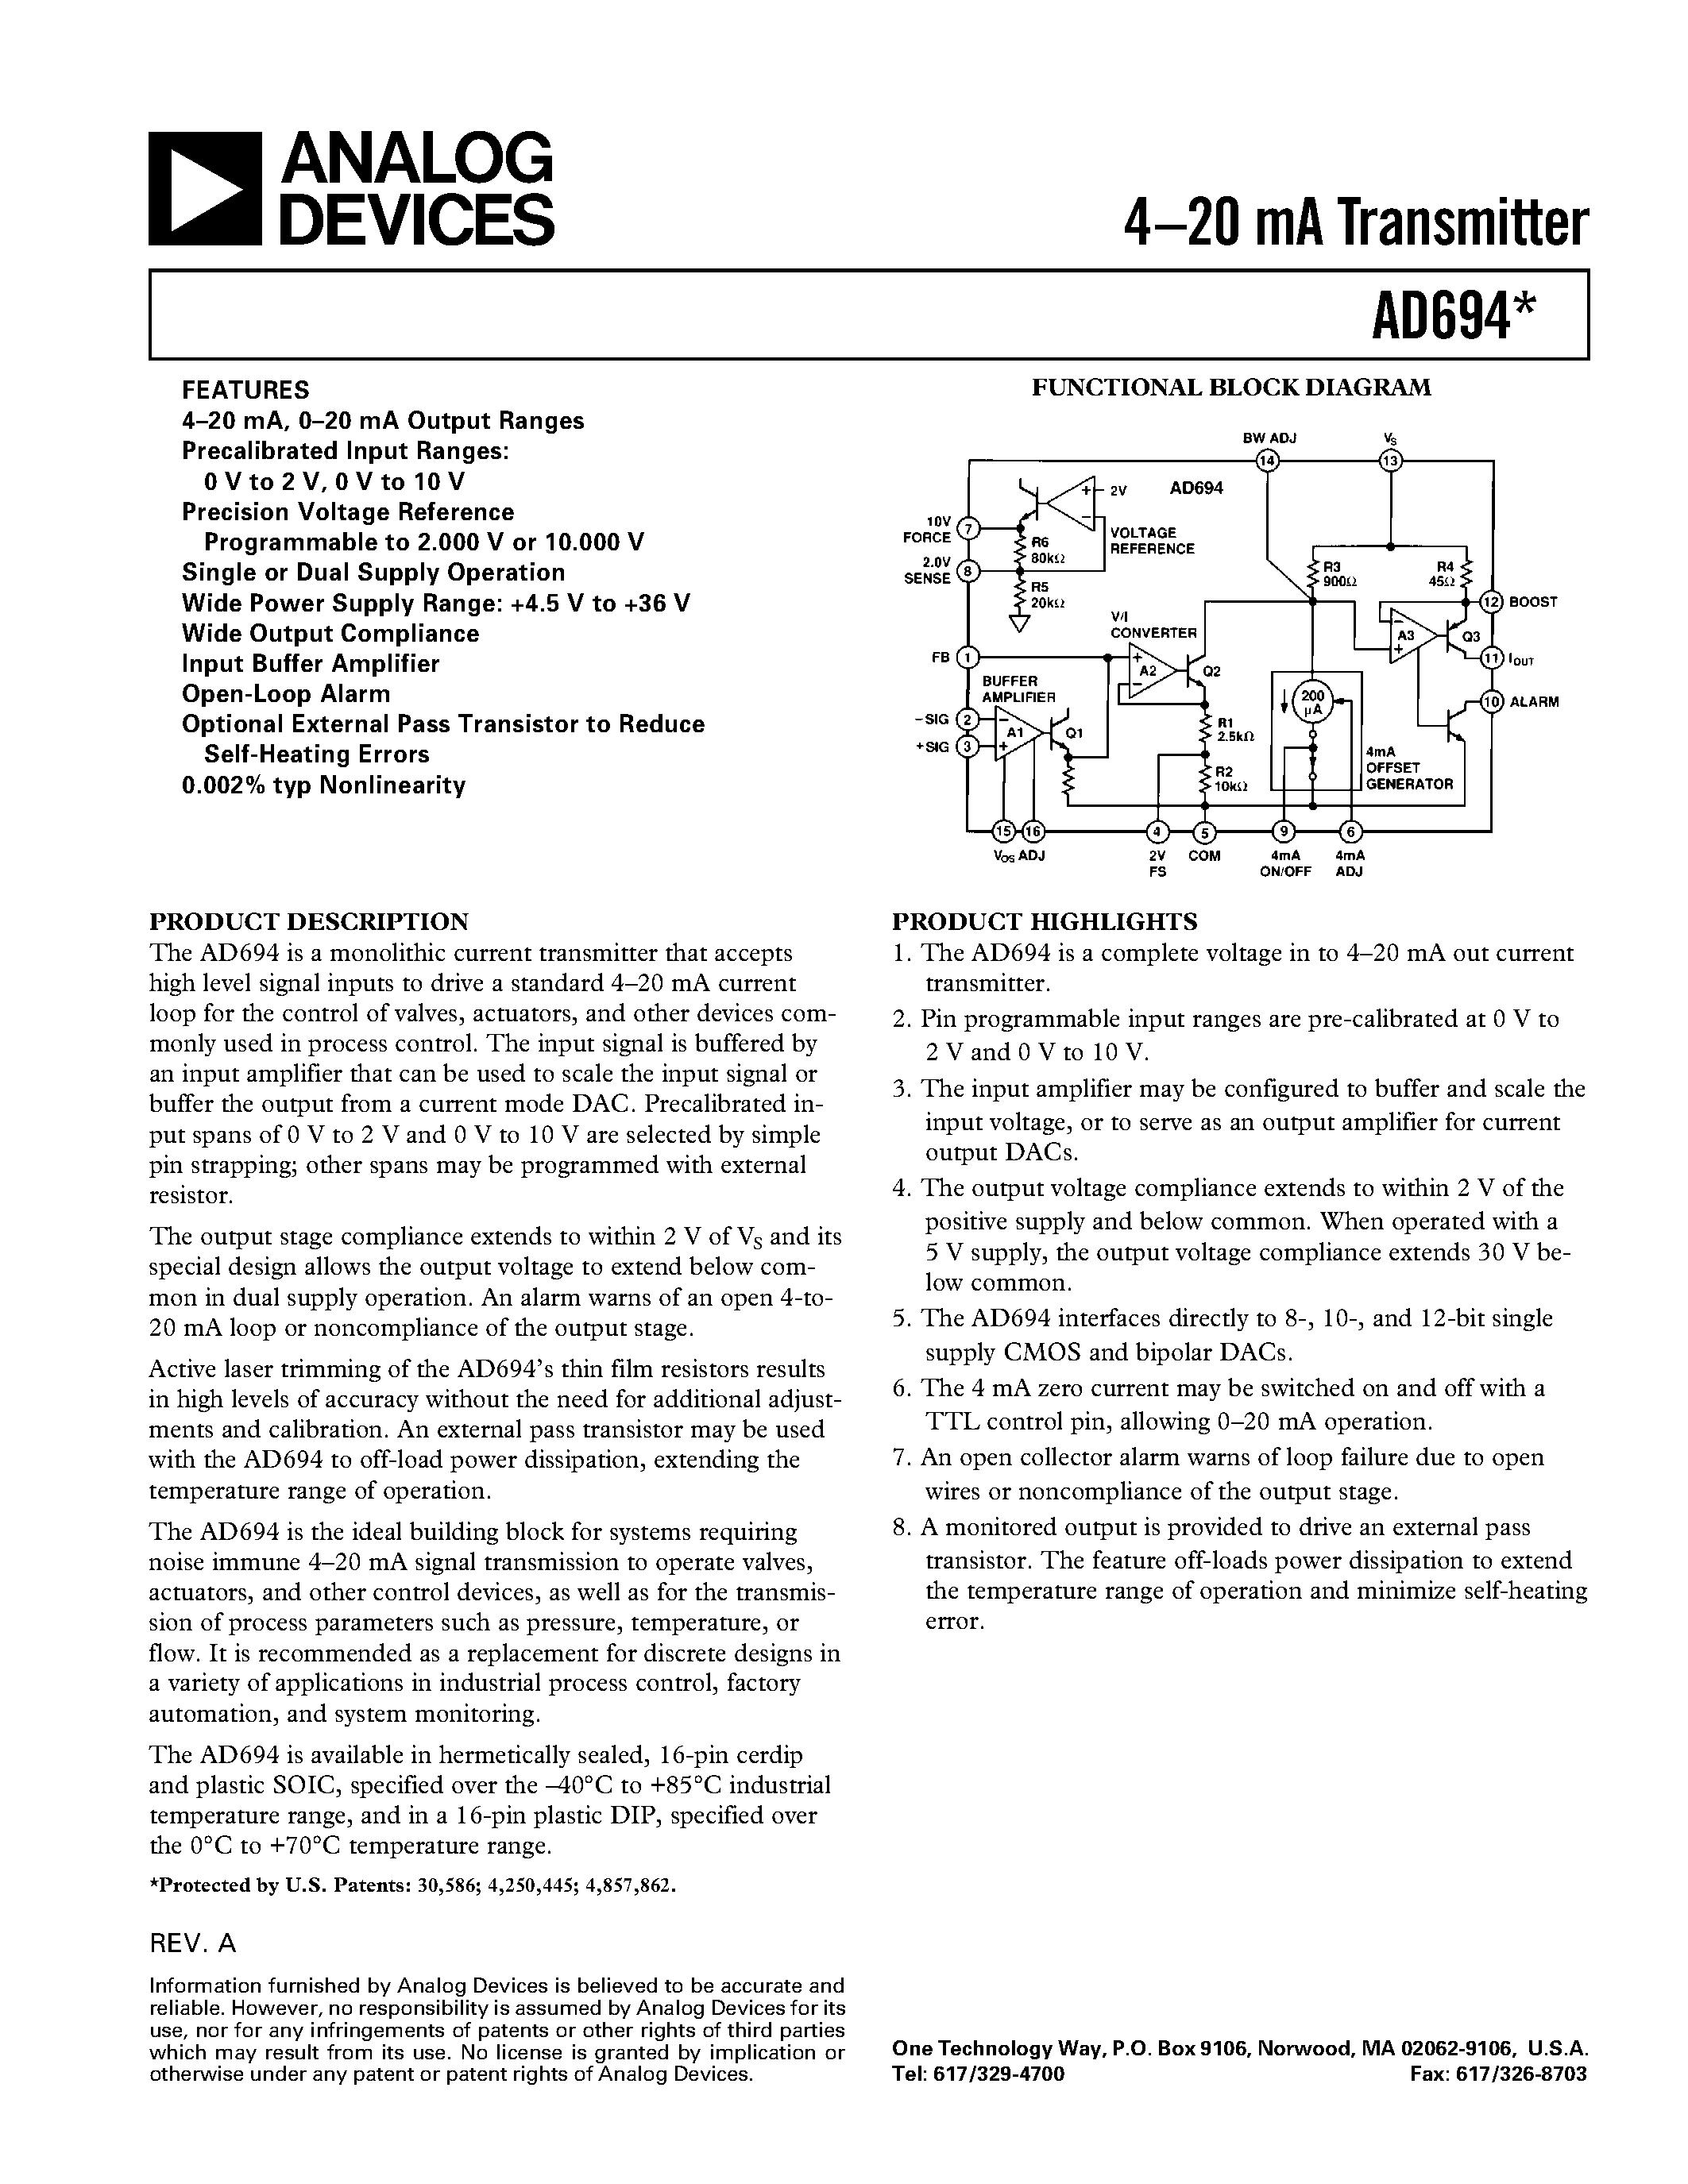 Даташит AD694AR - 4.20 mA Transmitter страница 1